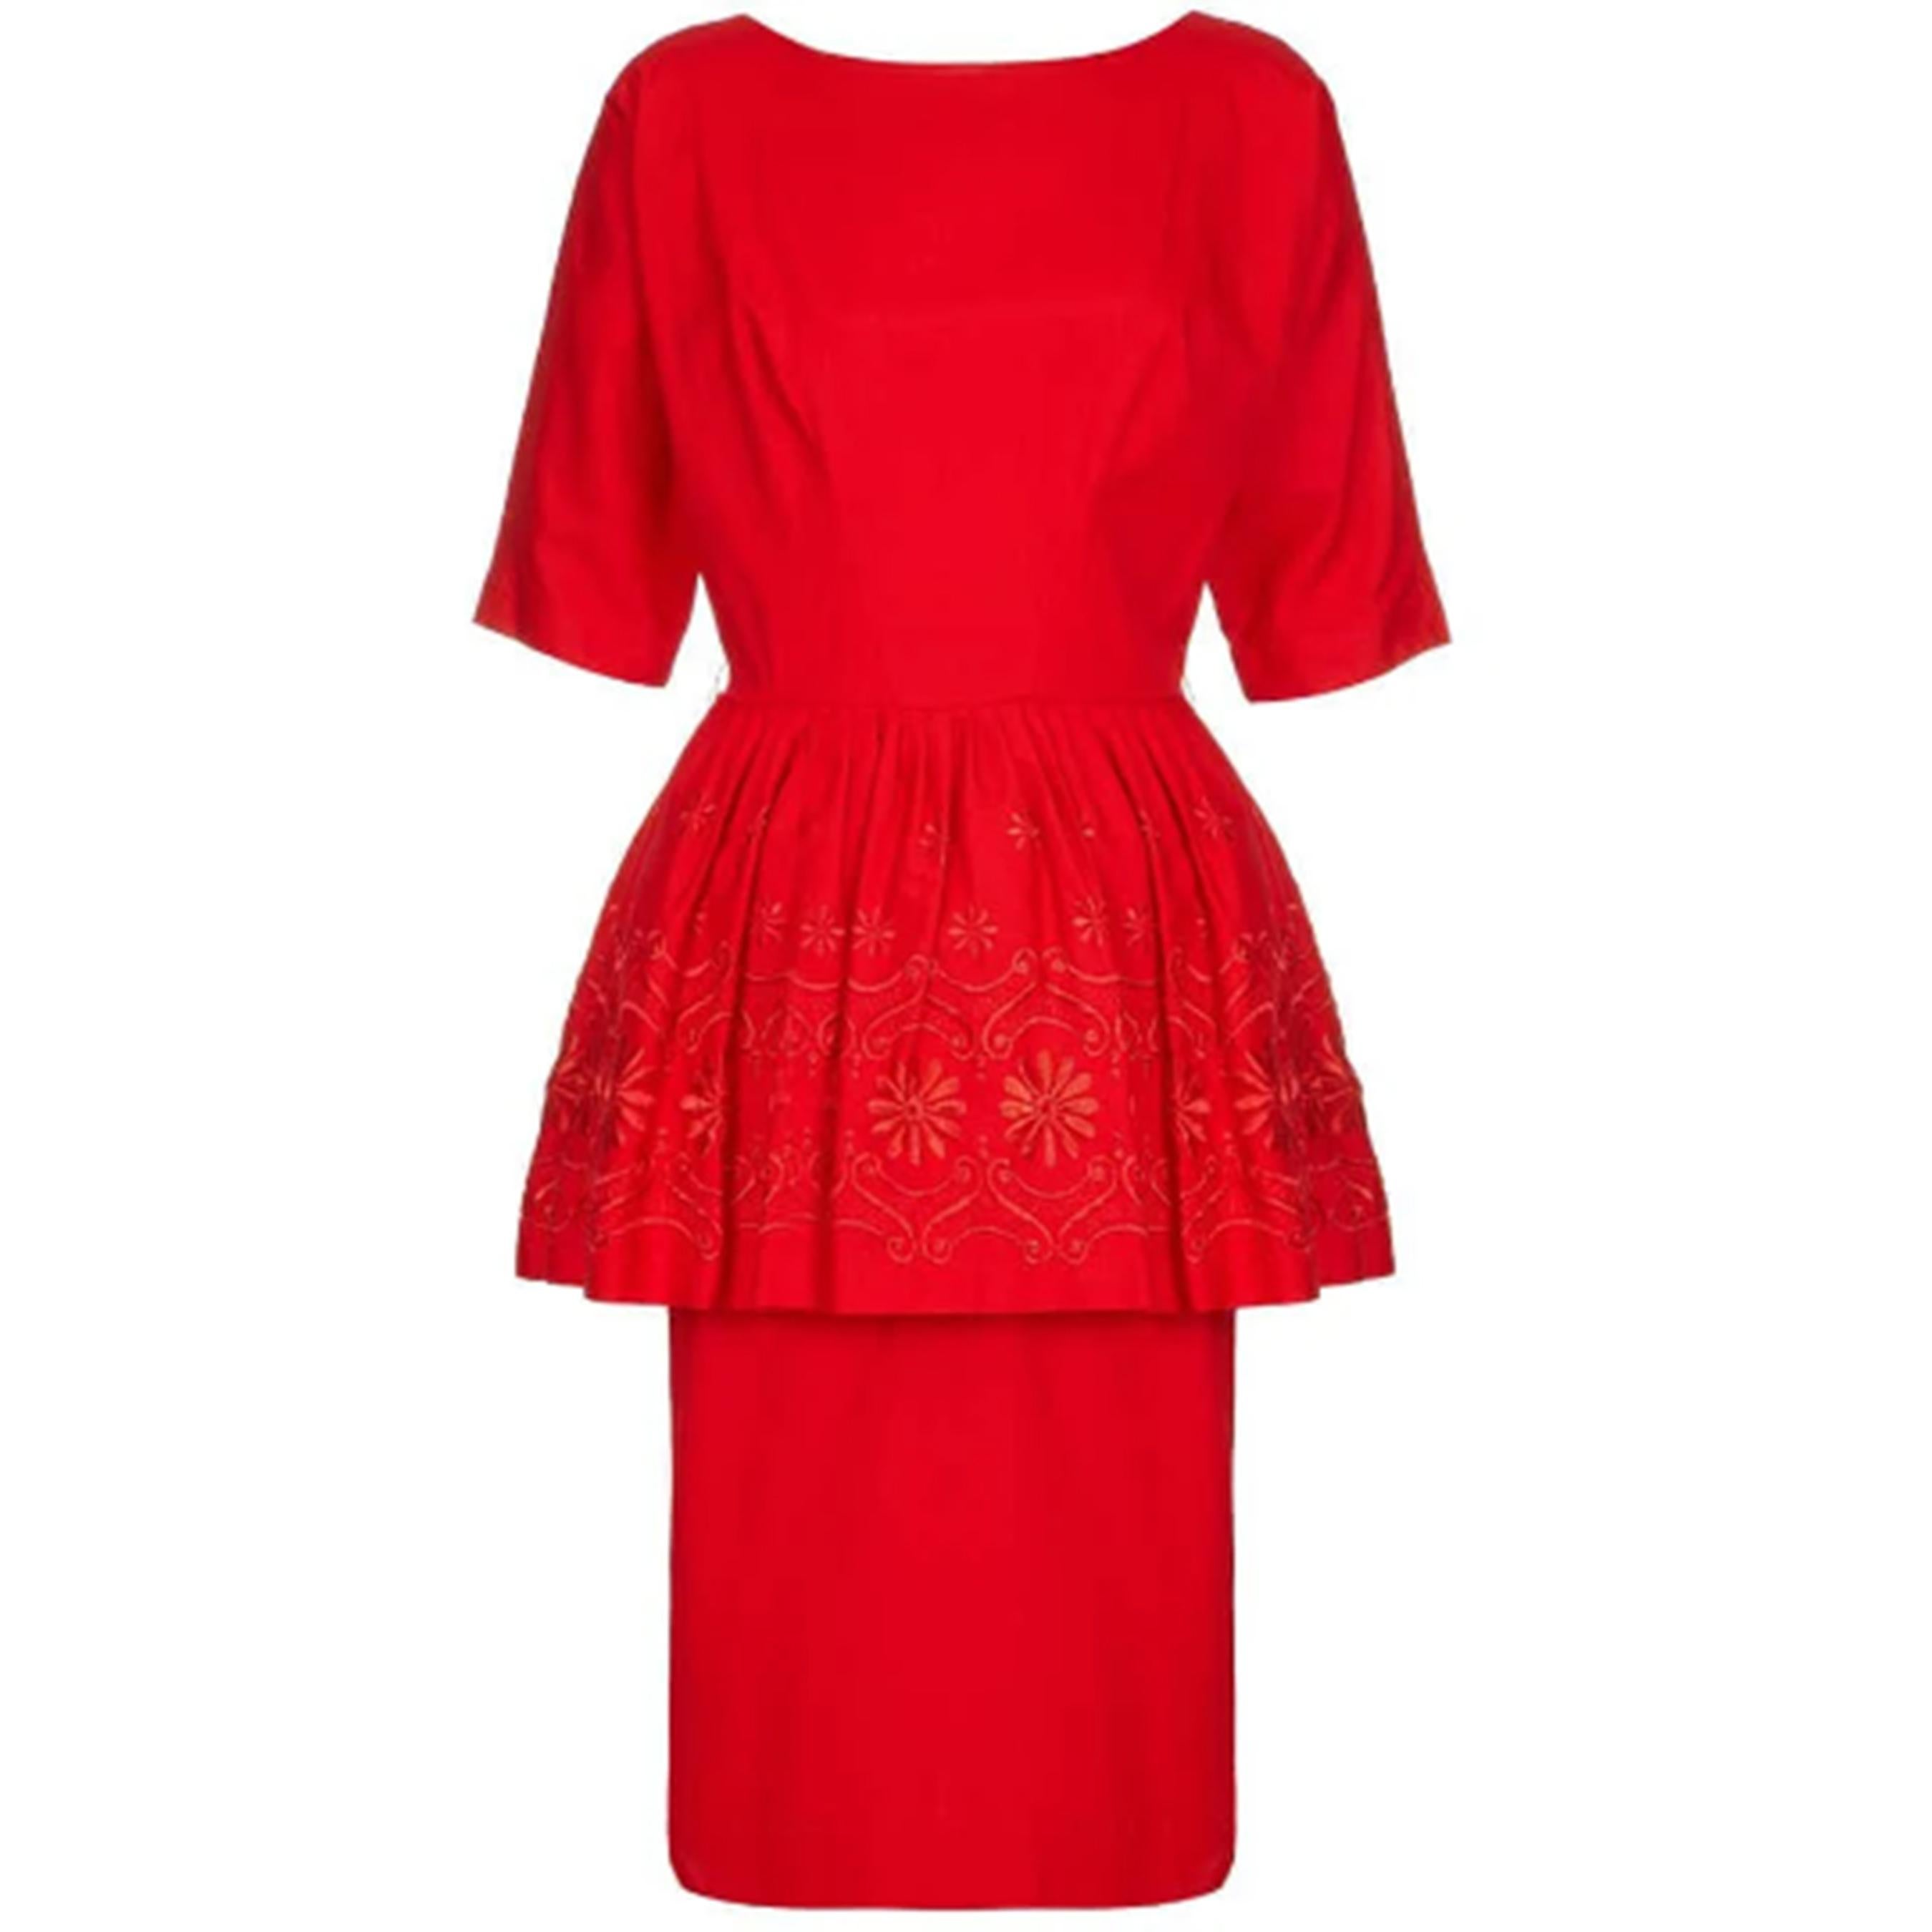 Rotes Baumwollkleid aus den 1950er oder frühen 1960er Jahren mit Blumenstickerei und plissiertem Schößchen. Das Kleid hat außerdem ellenbogenlange Ärmel, ein tailliertes Oberteil und einen Unterrock und wird hinten mit einem Reißverschluss